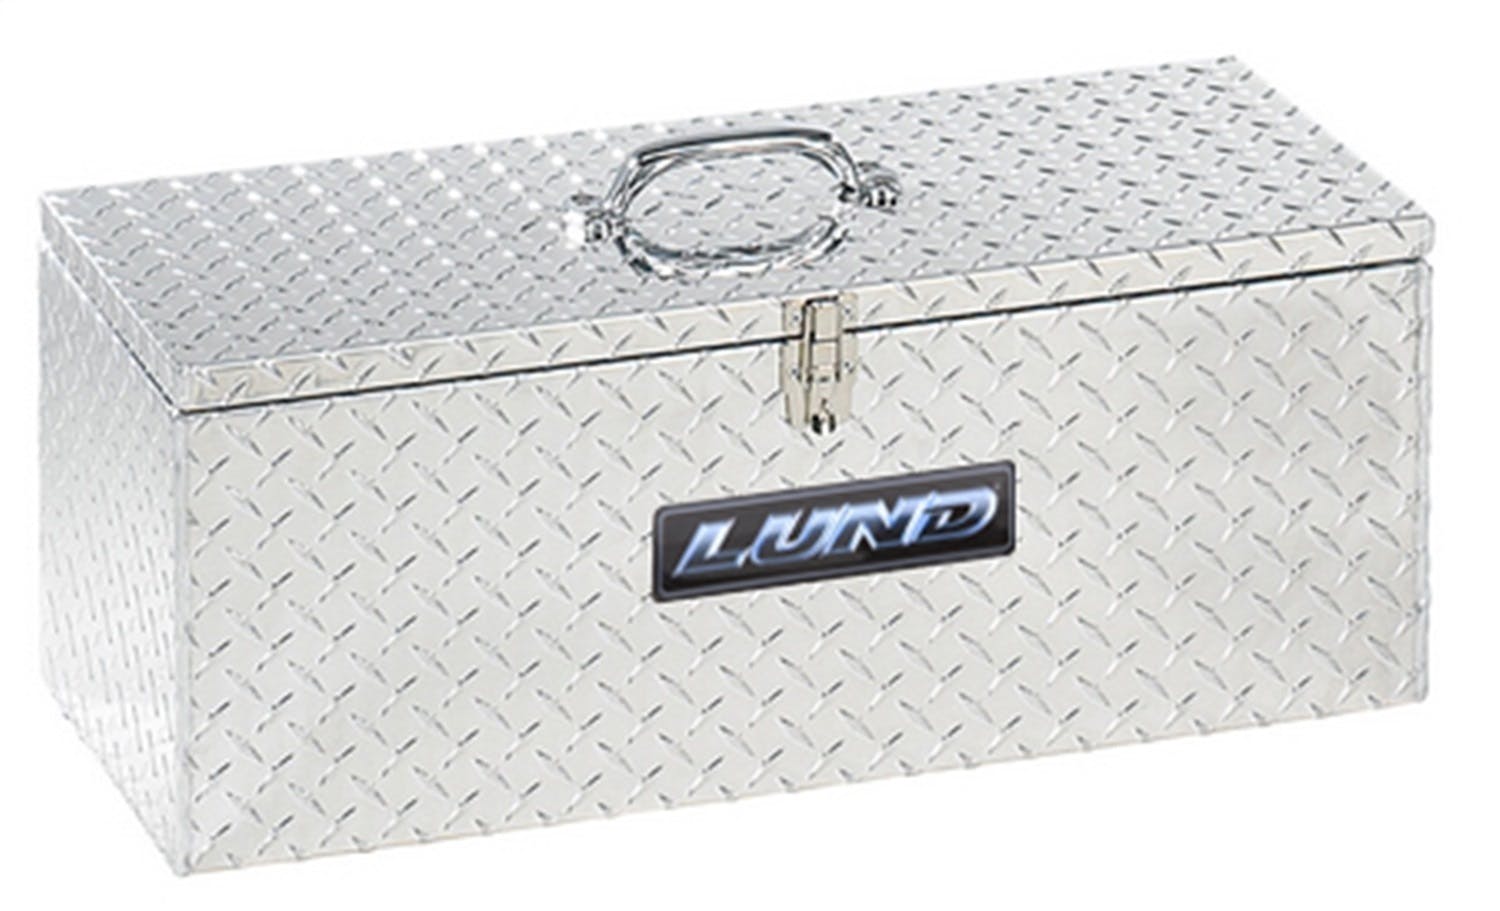 LUND 5140 Aluminum Specialty Box ALUMINUM SPECIALTY BOXES